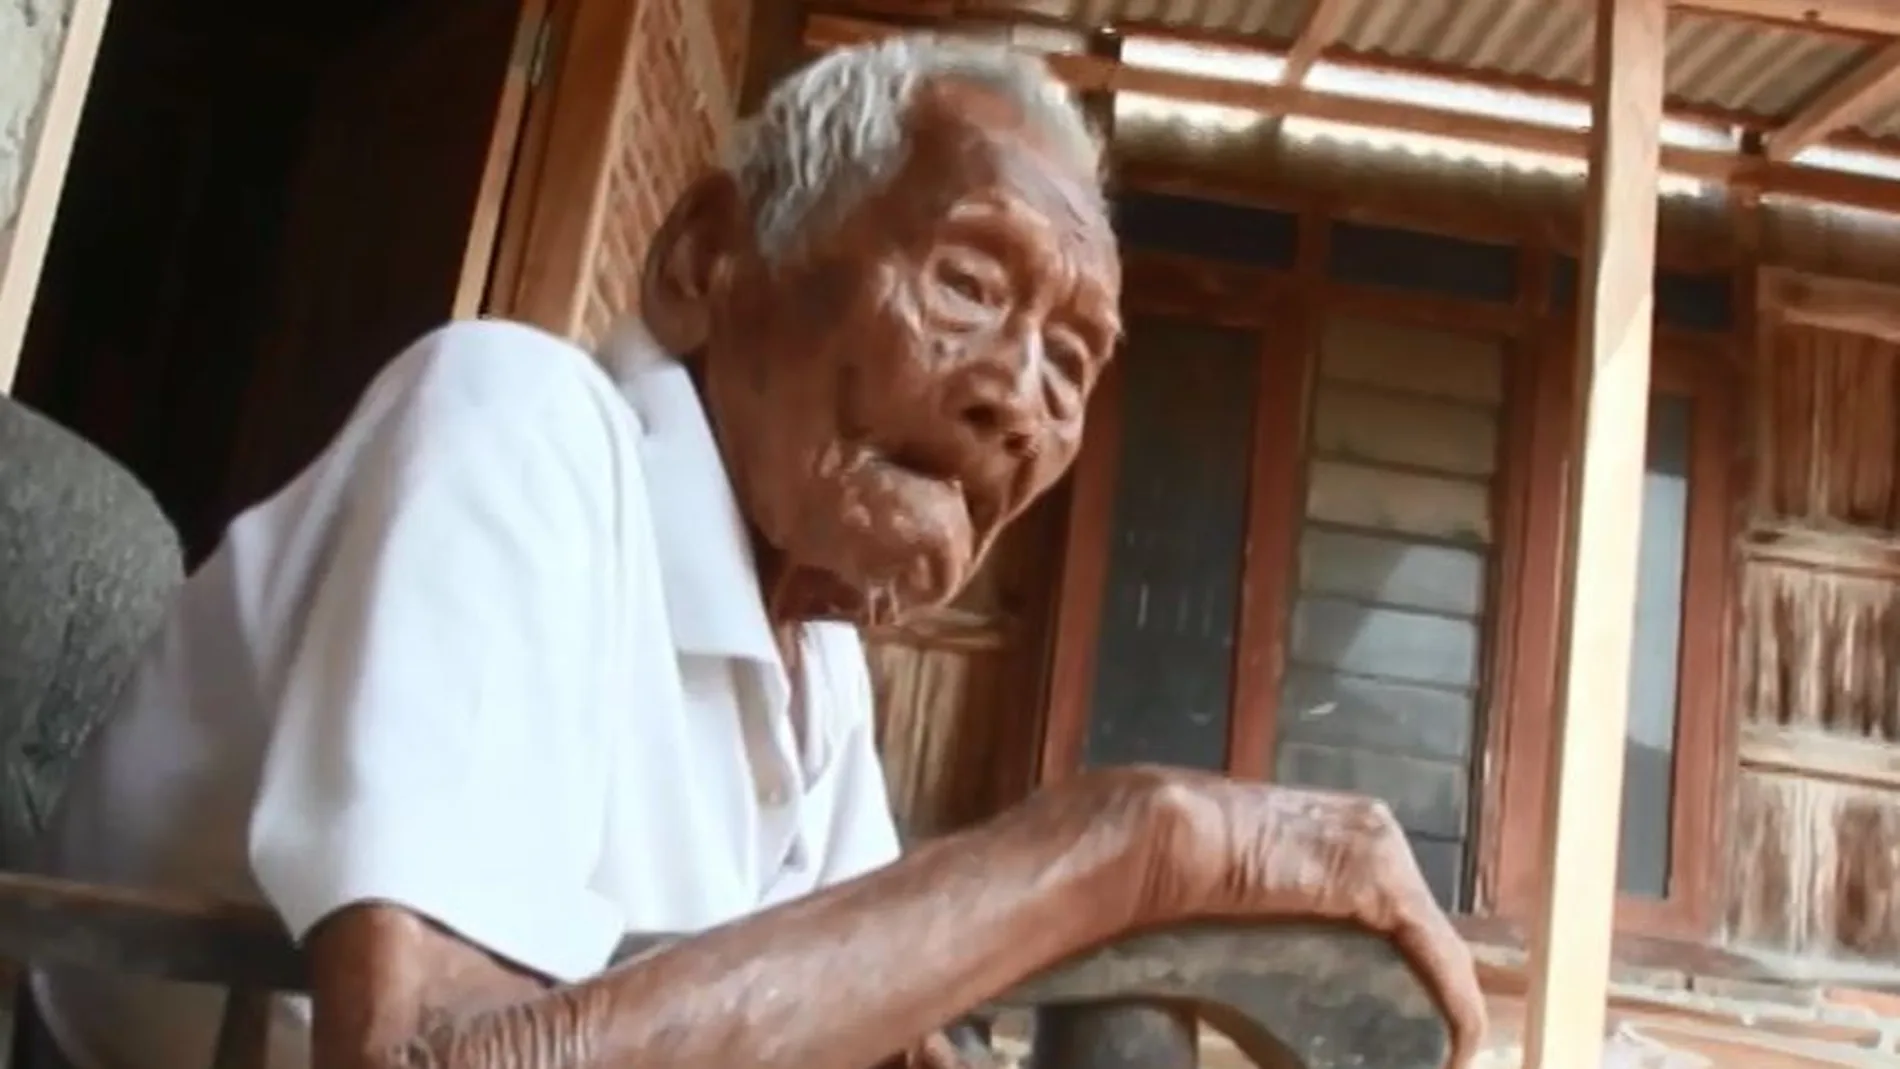 Un indonesio sostiene que nació en 1870, hace 145 años